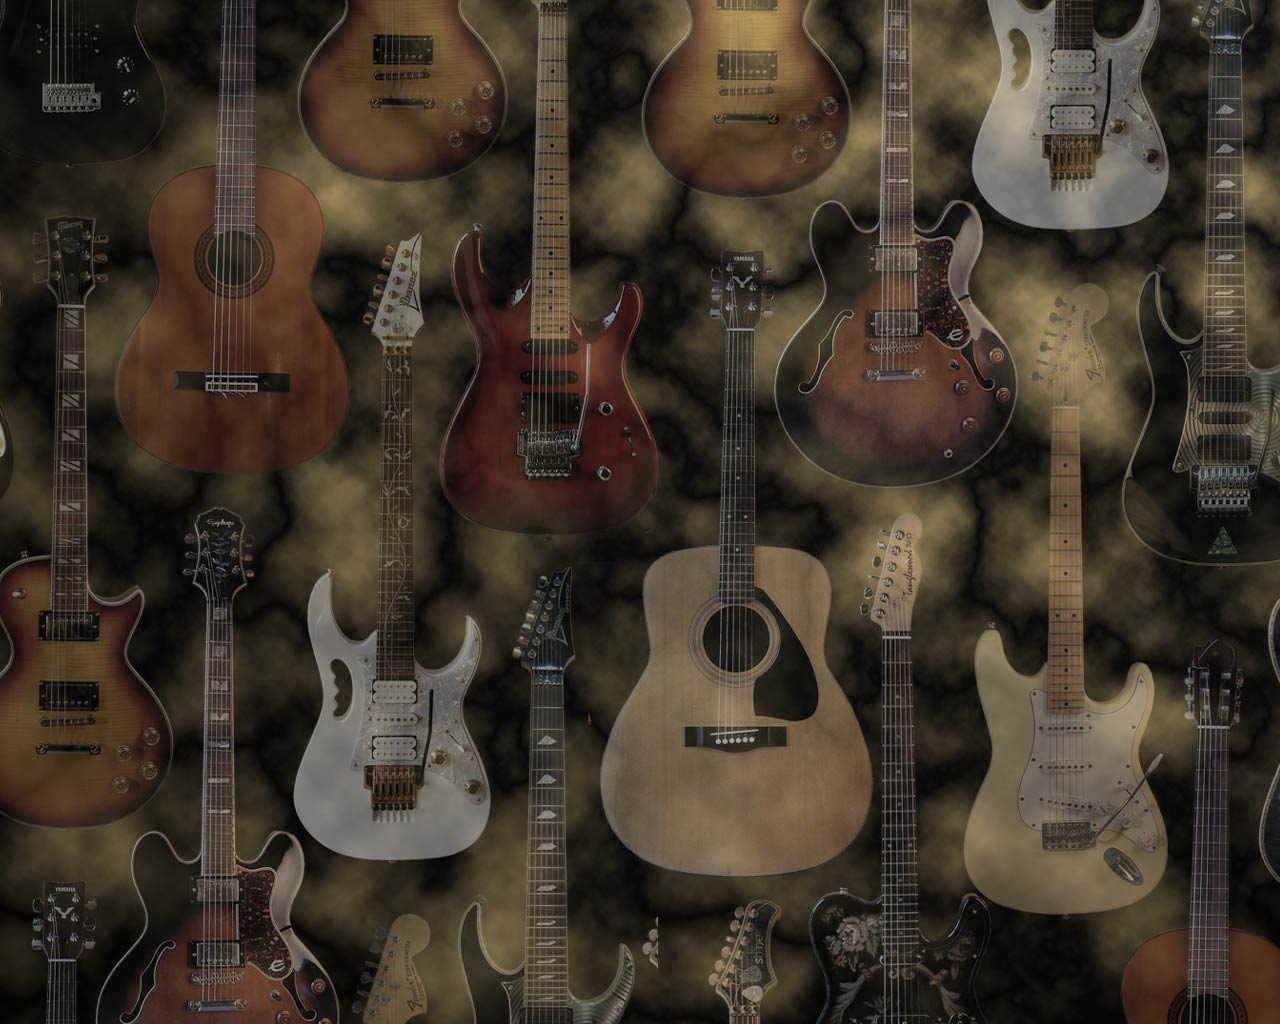 Guitar wallpaper, from GCH Guitar Academy